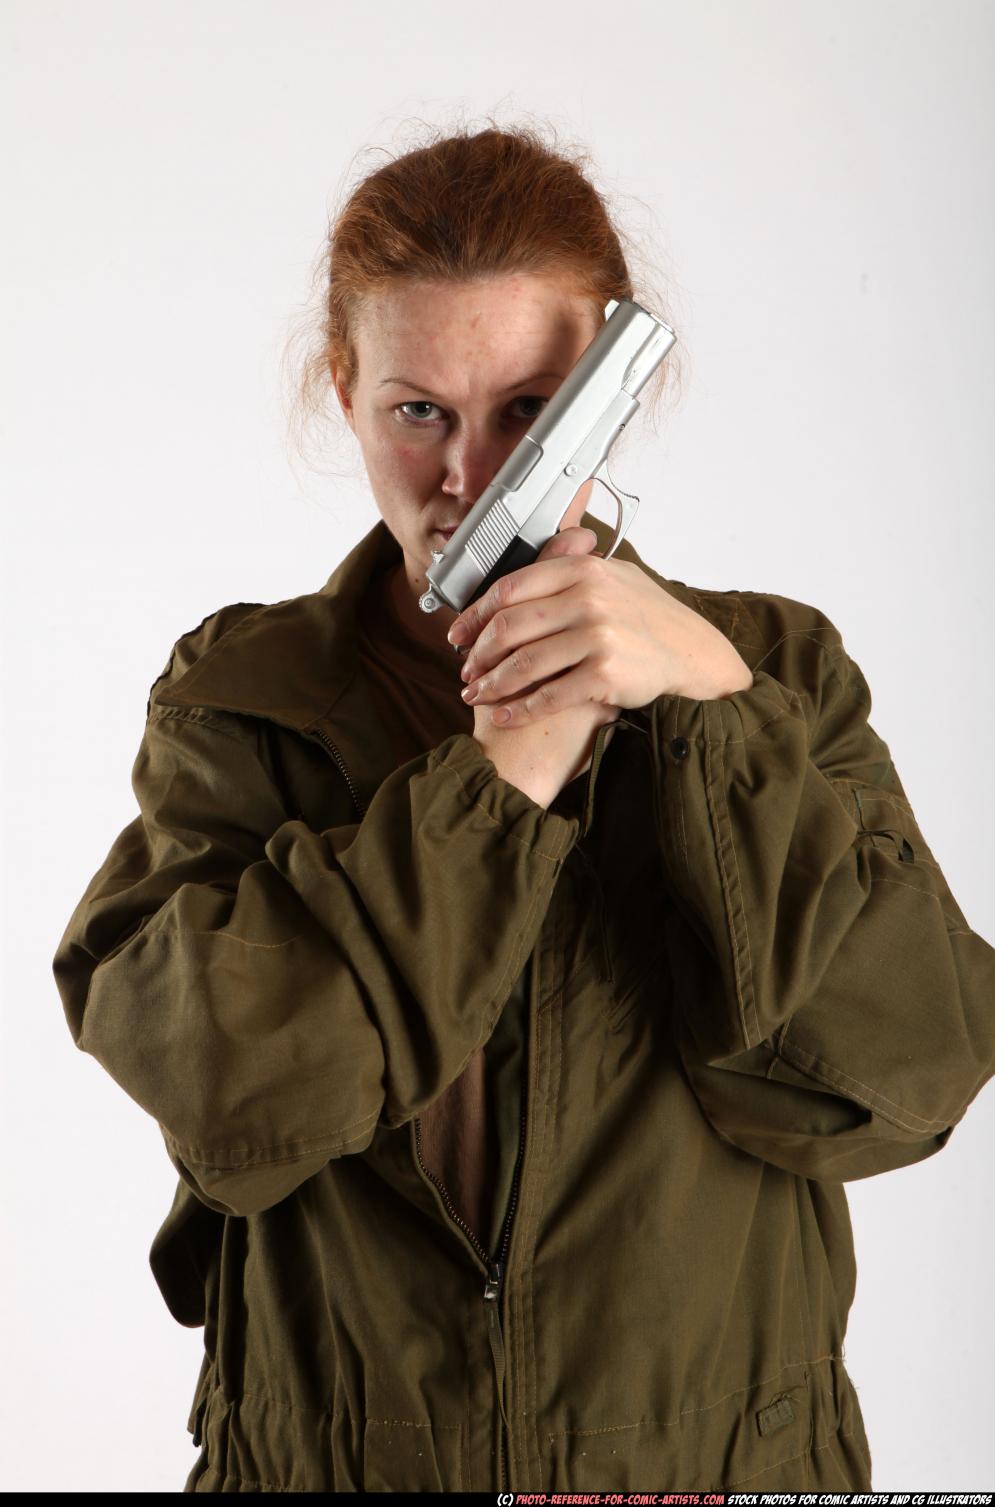 Image from Action Pack #2 - 2010_08_nadiya_army_pistol_pose1_00.jpg